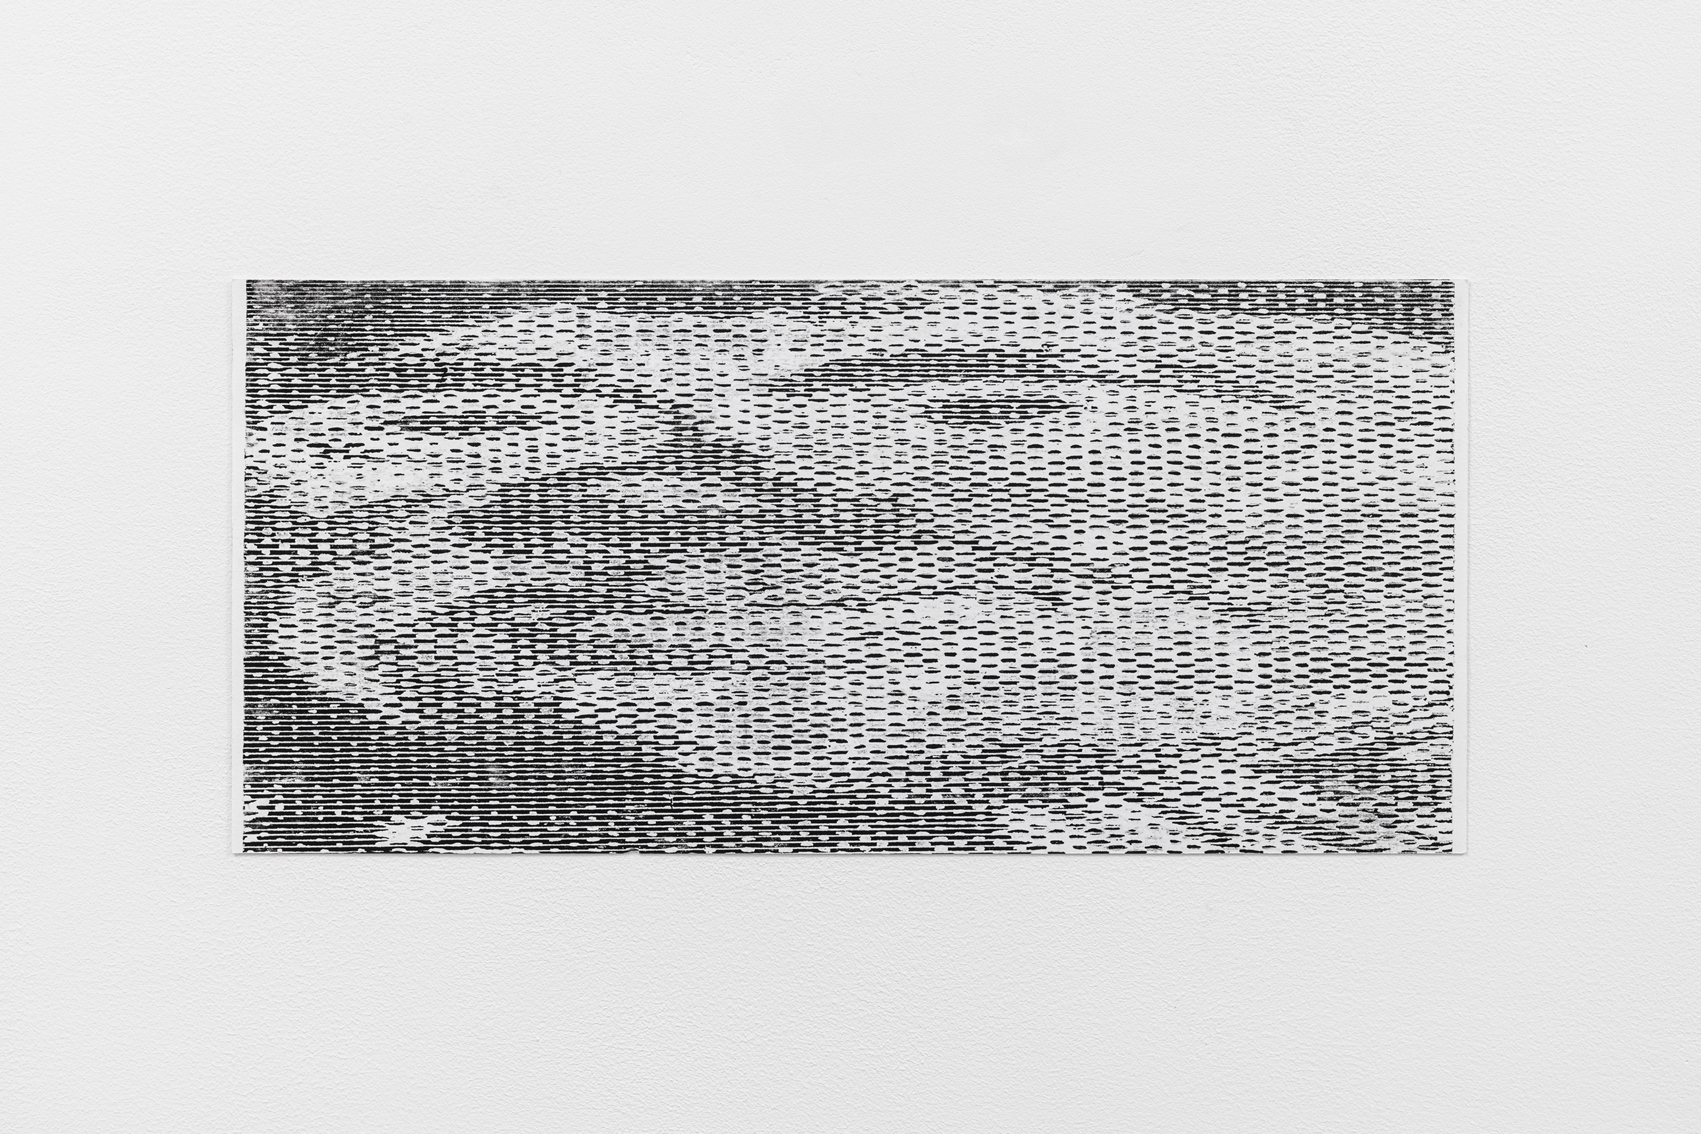 Maxime Le Bon, TchantchÃ¨s #4, 2021, oil and graphit on paper, 41 x 19 cm